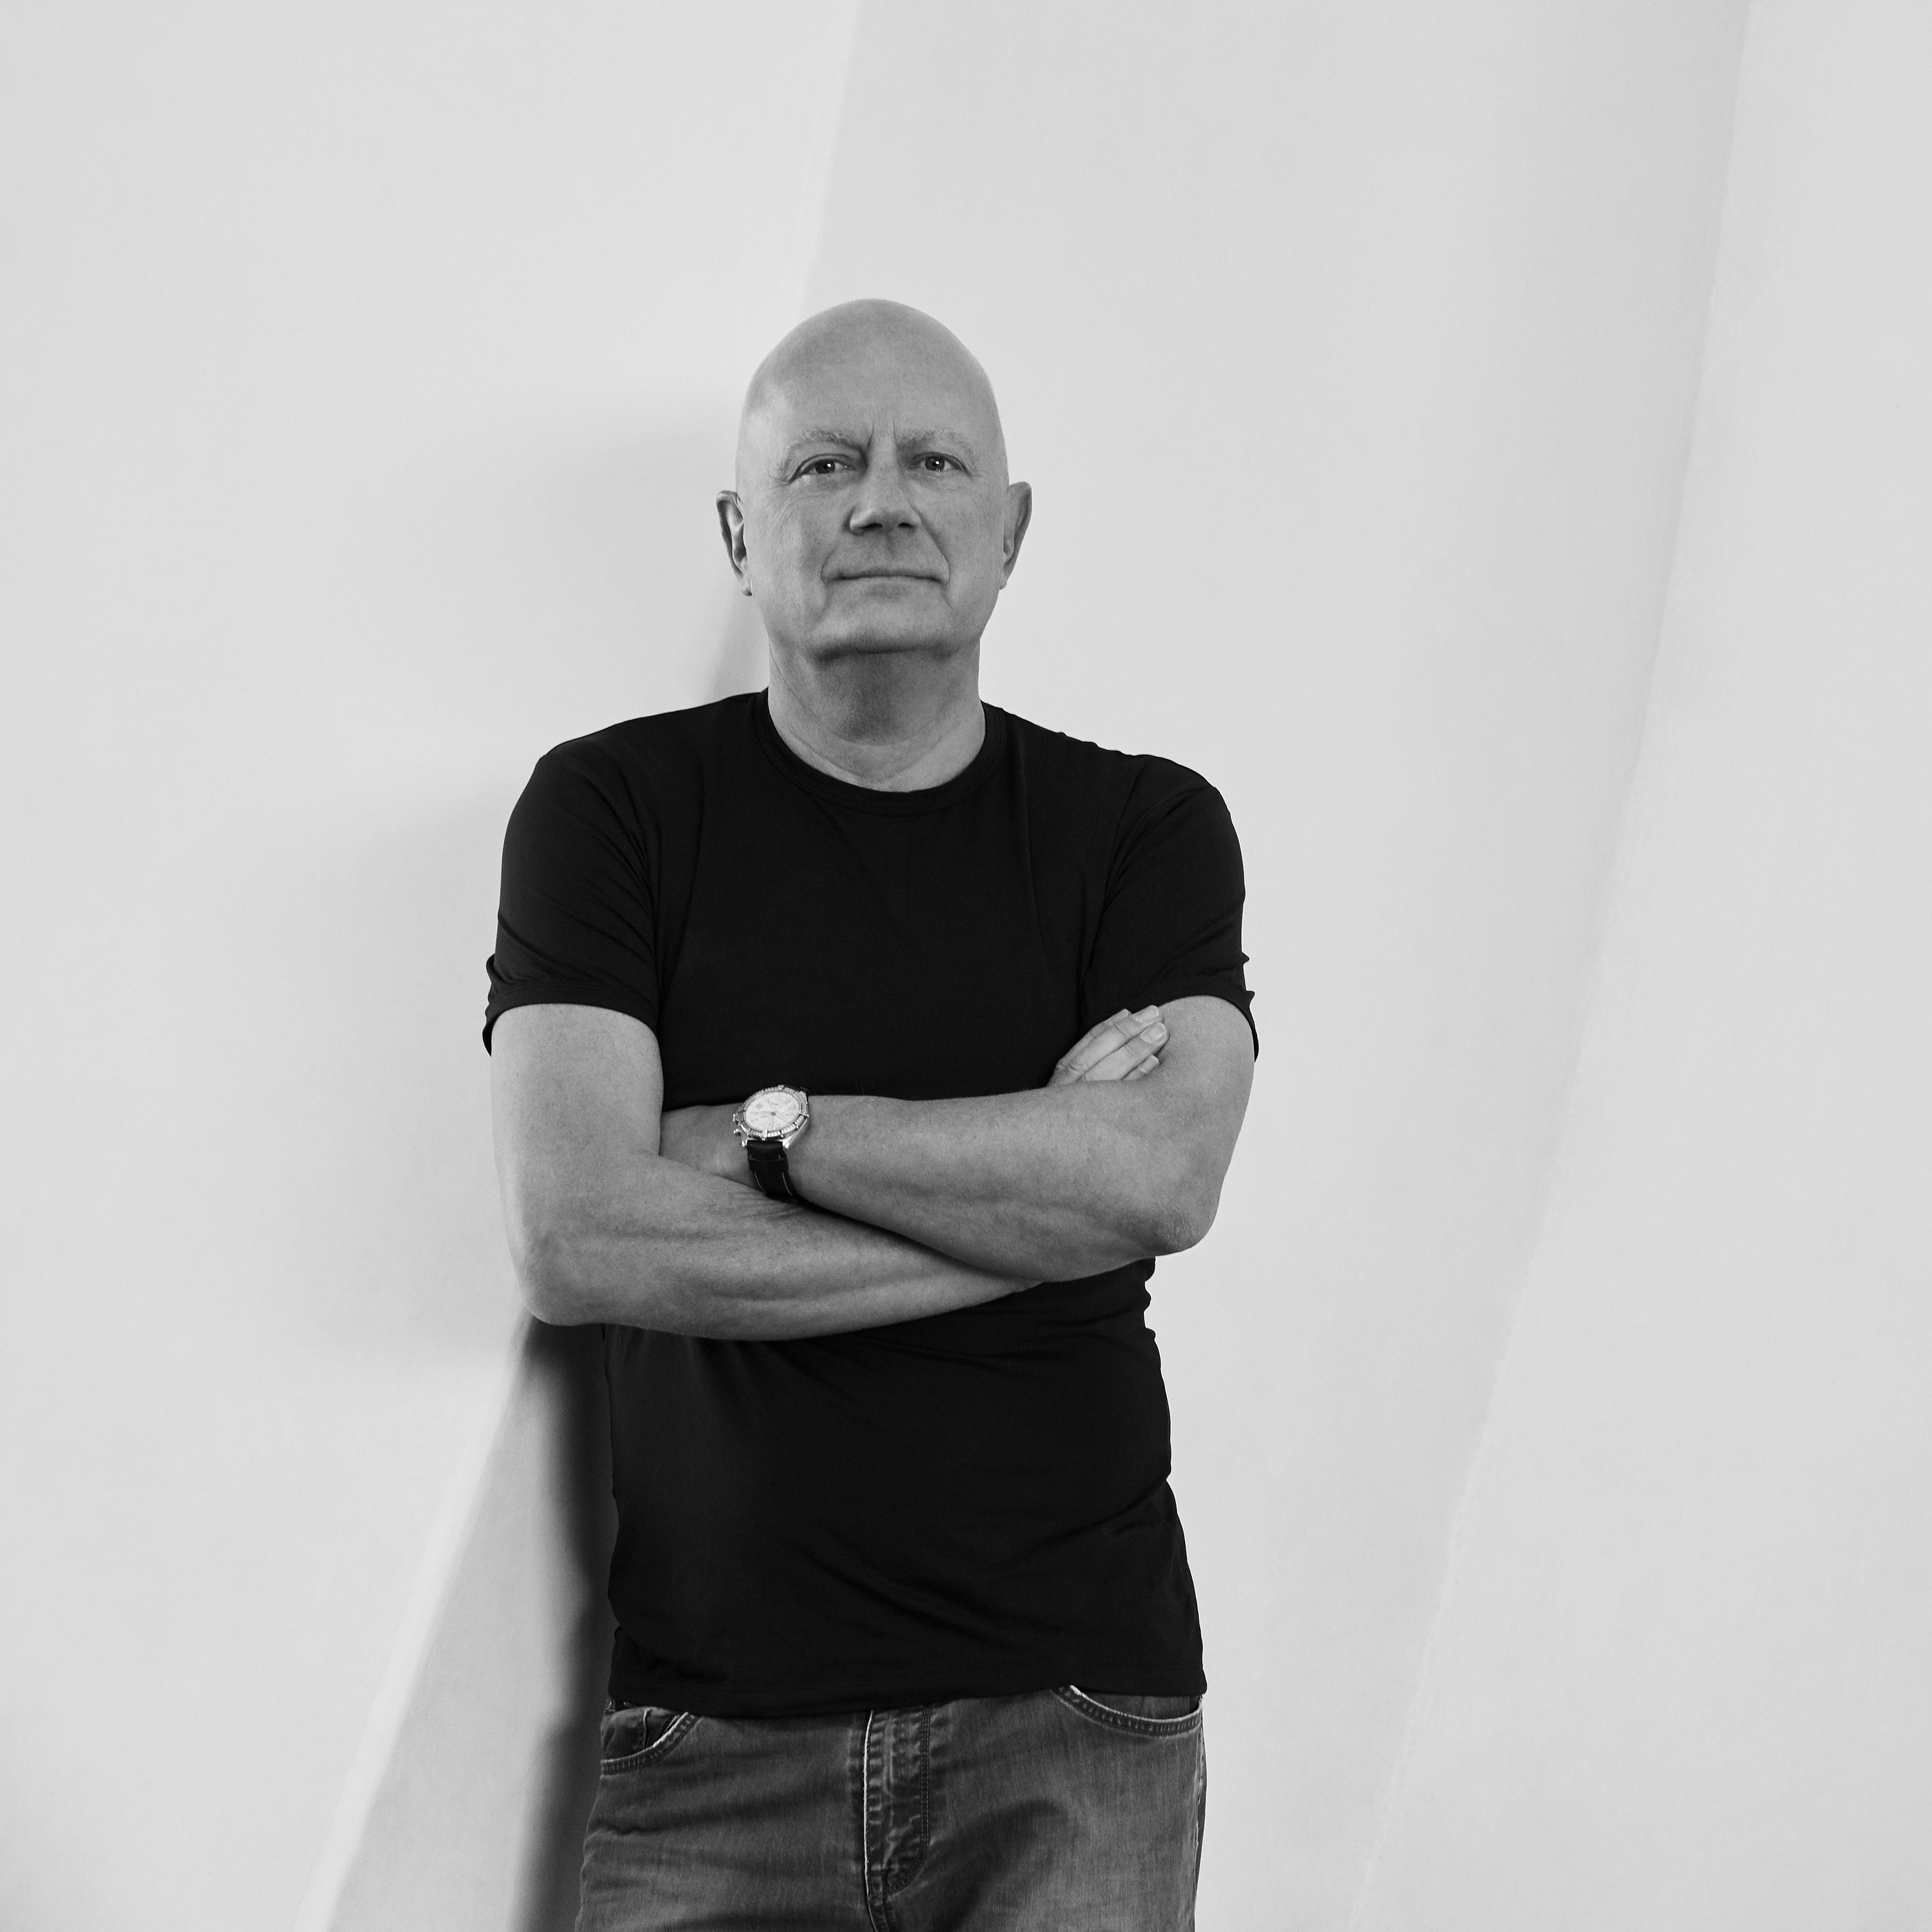 Morten Georgsen tervező fekete-fehérben